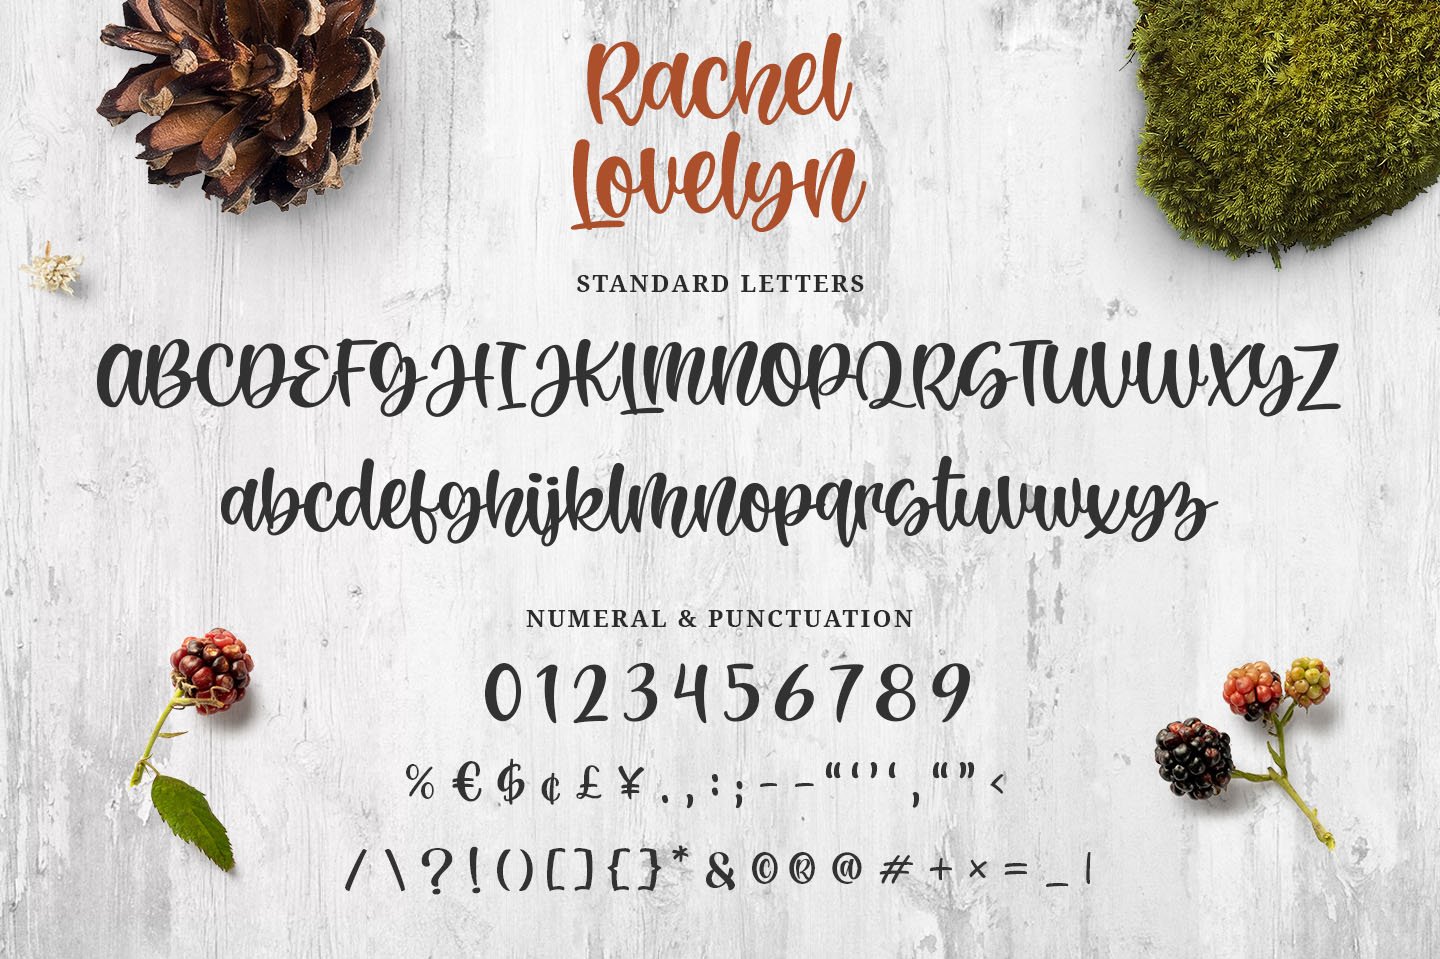 rachel lovelyn 9 403